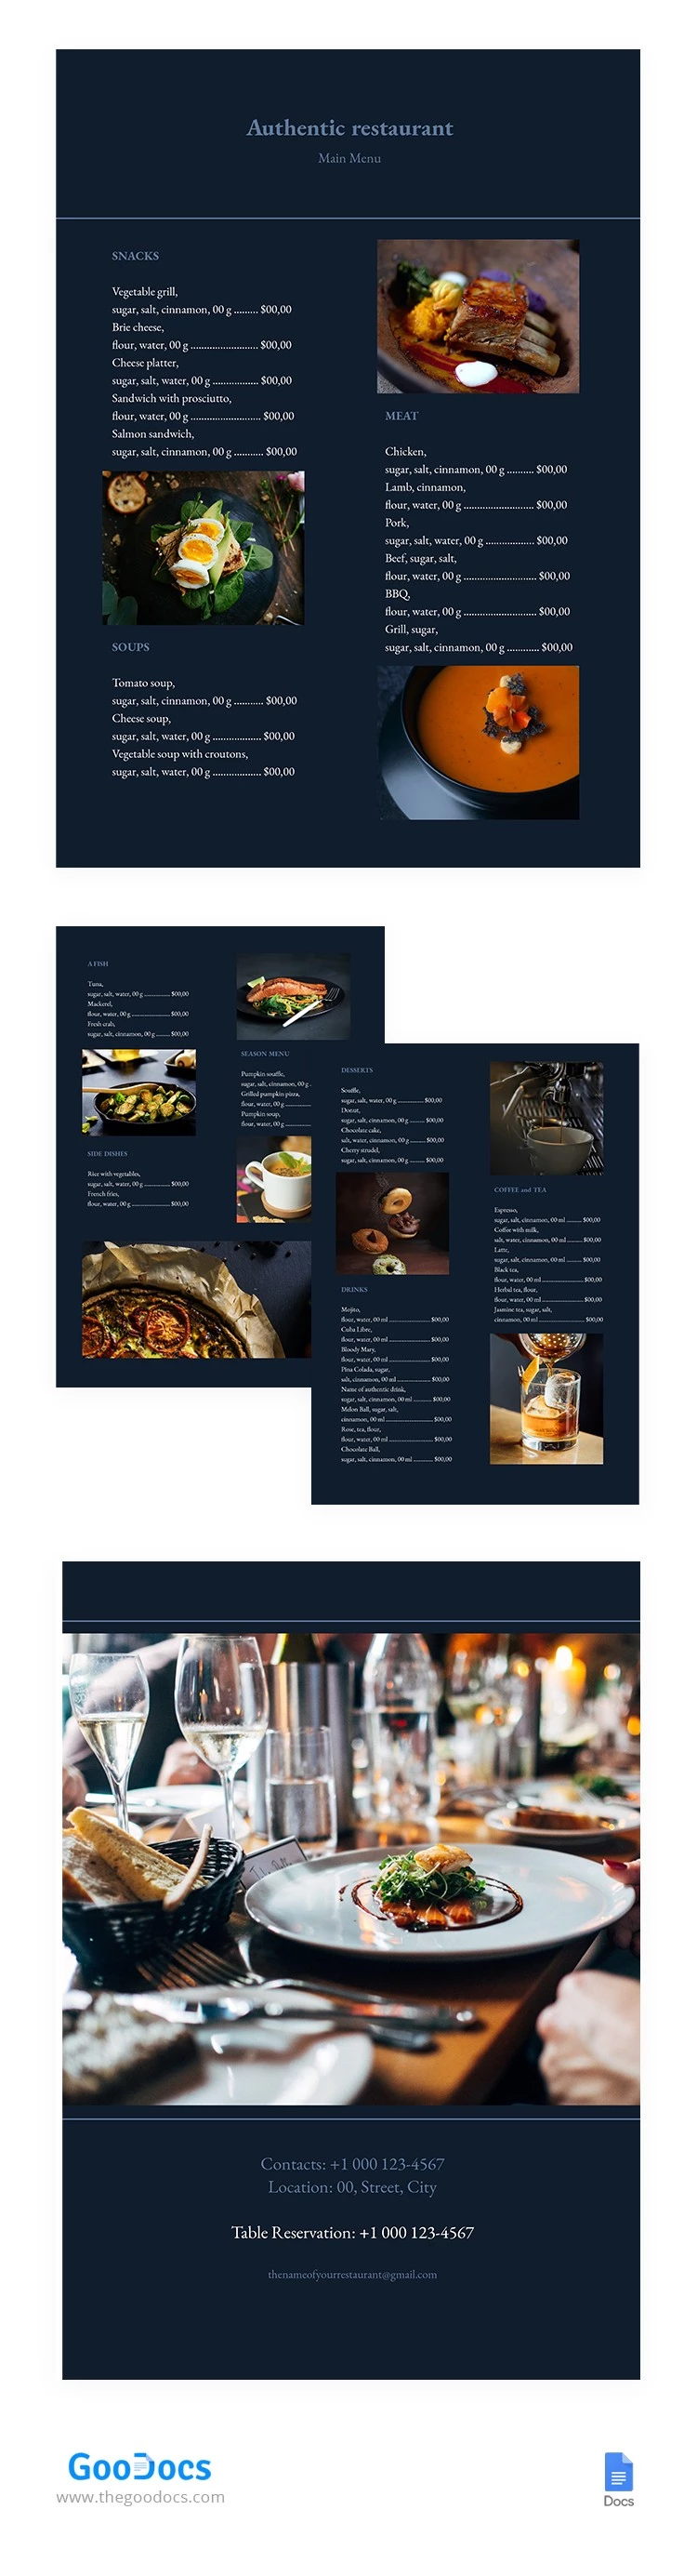 Menu de restaurant authentique - free Google Docs Template - 10062286